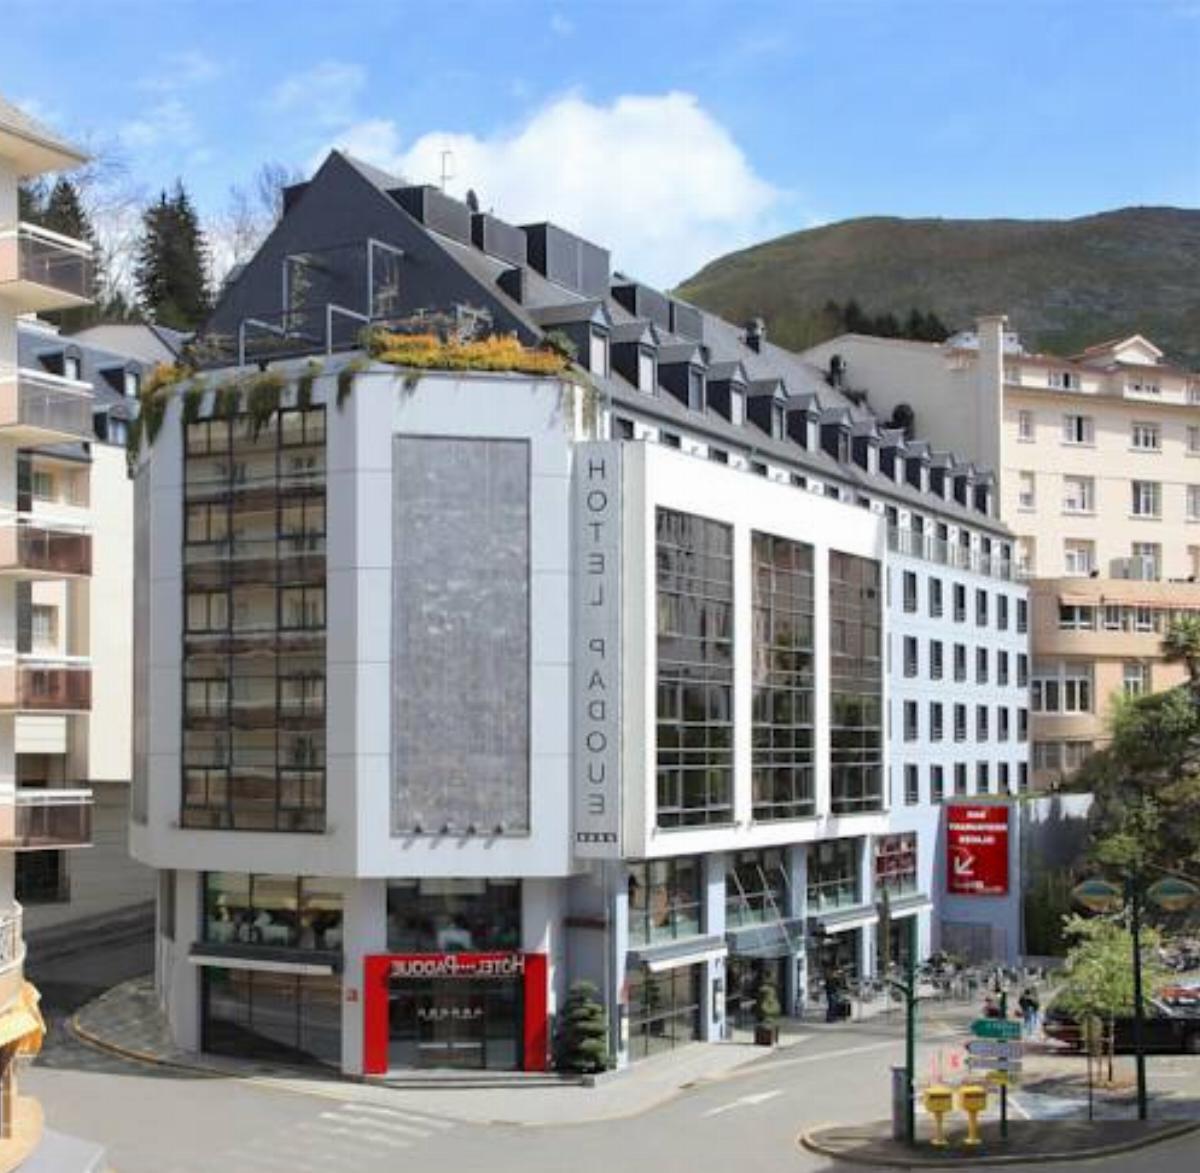 Hôtel Padoue Hotel Lourdes France